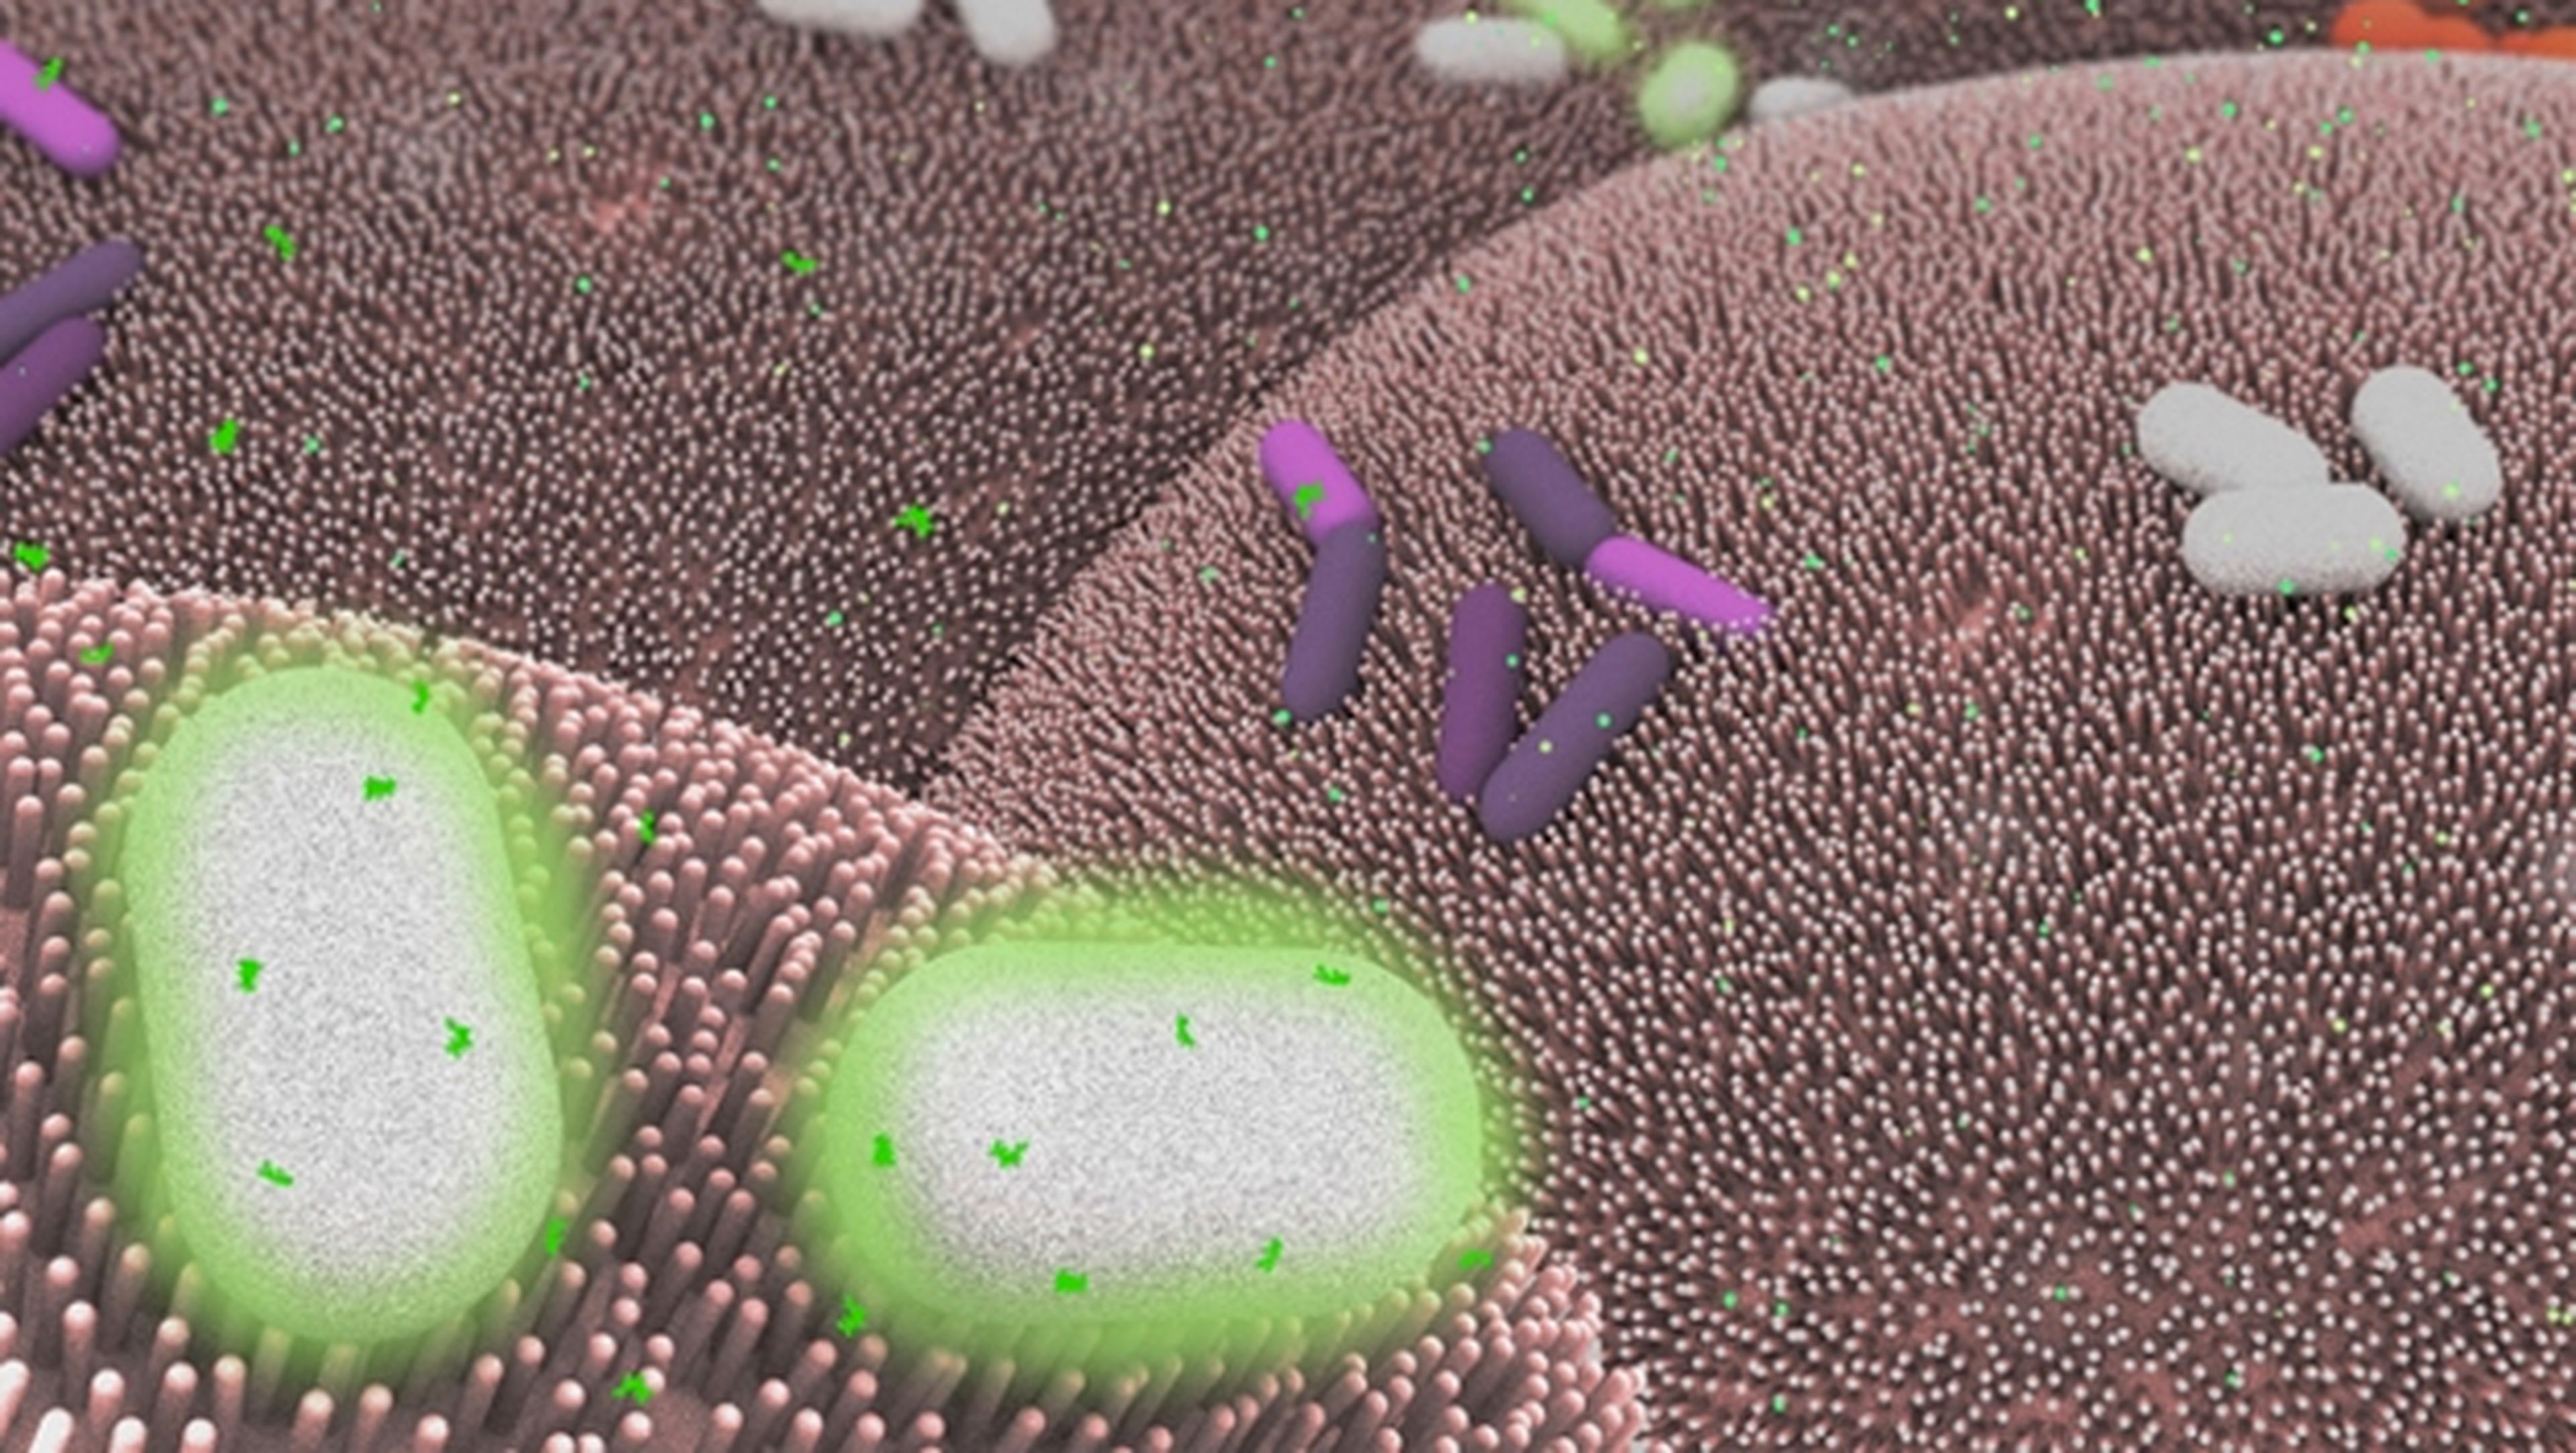 Programan una bacteria alterada genéticamente capaz de detectar enfermedades